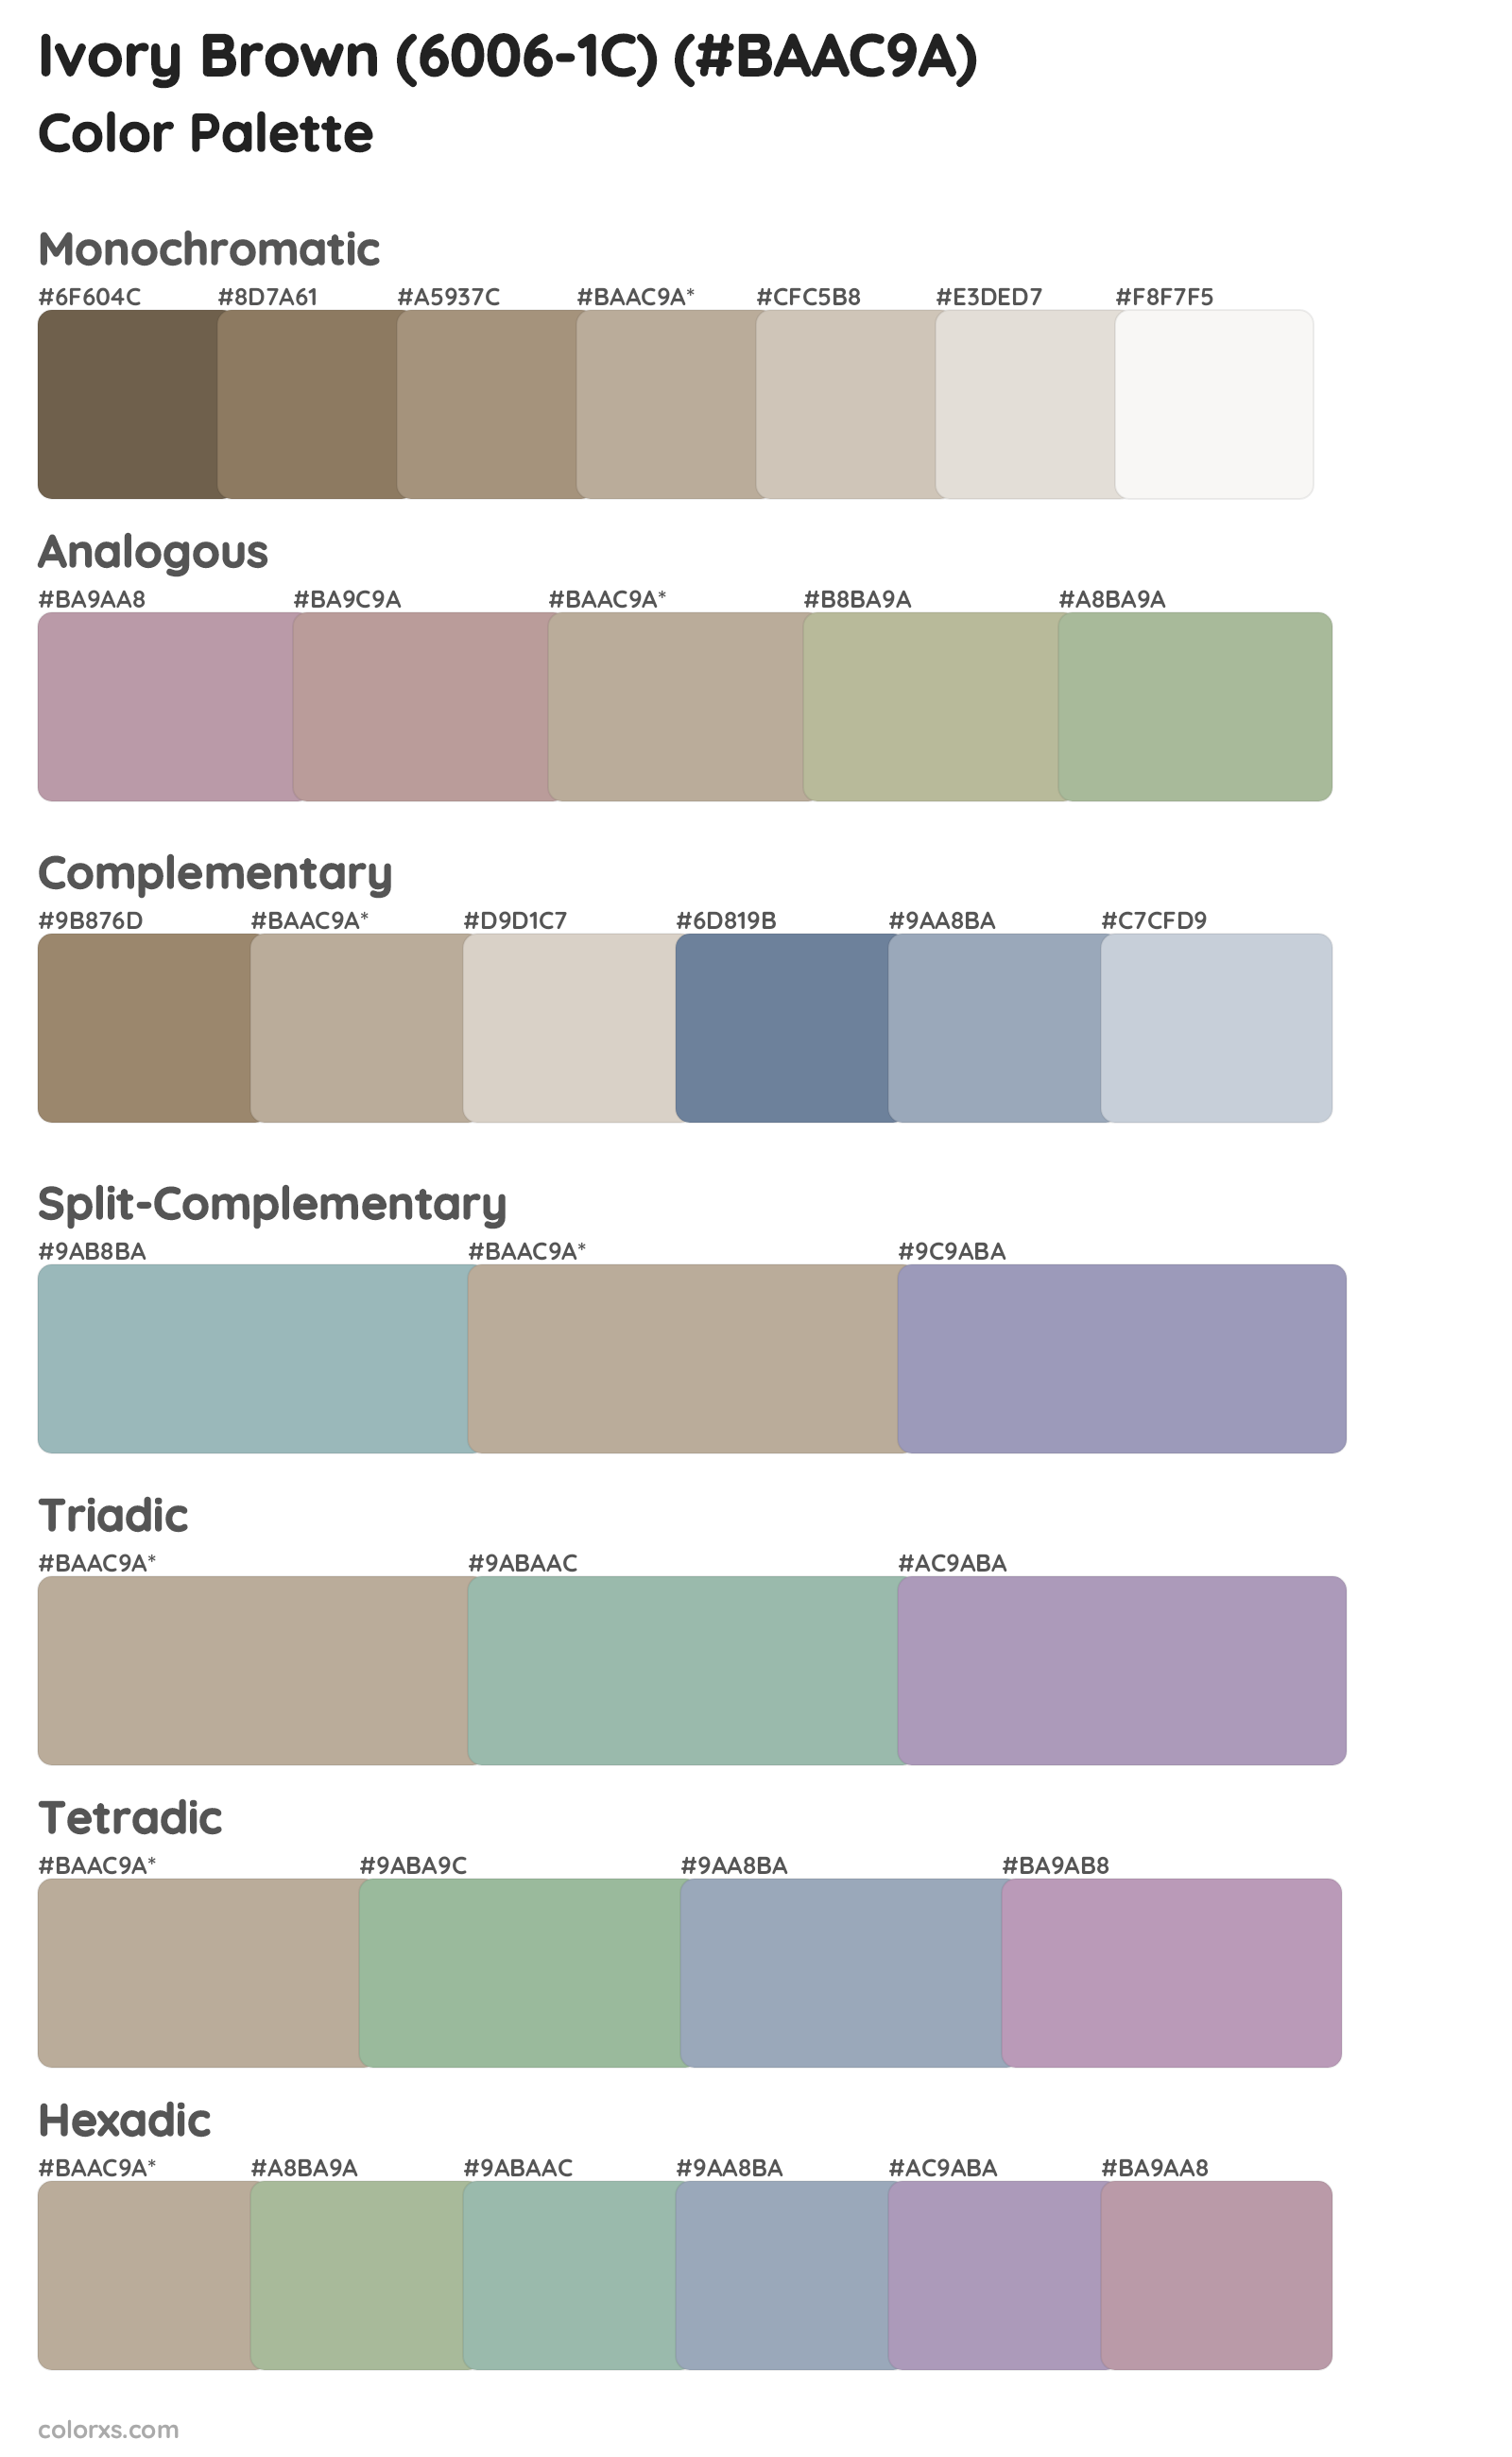 Ivory Brown (6006-1C) Color Scheme Palettes